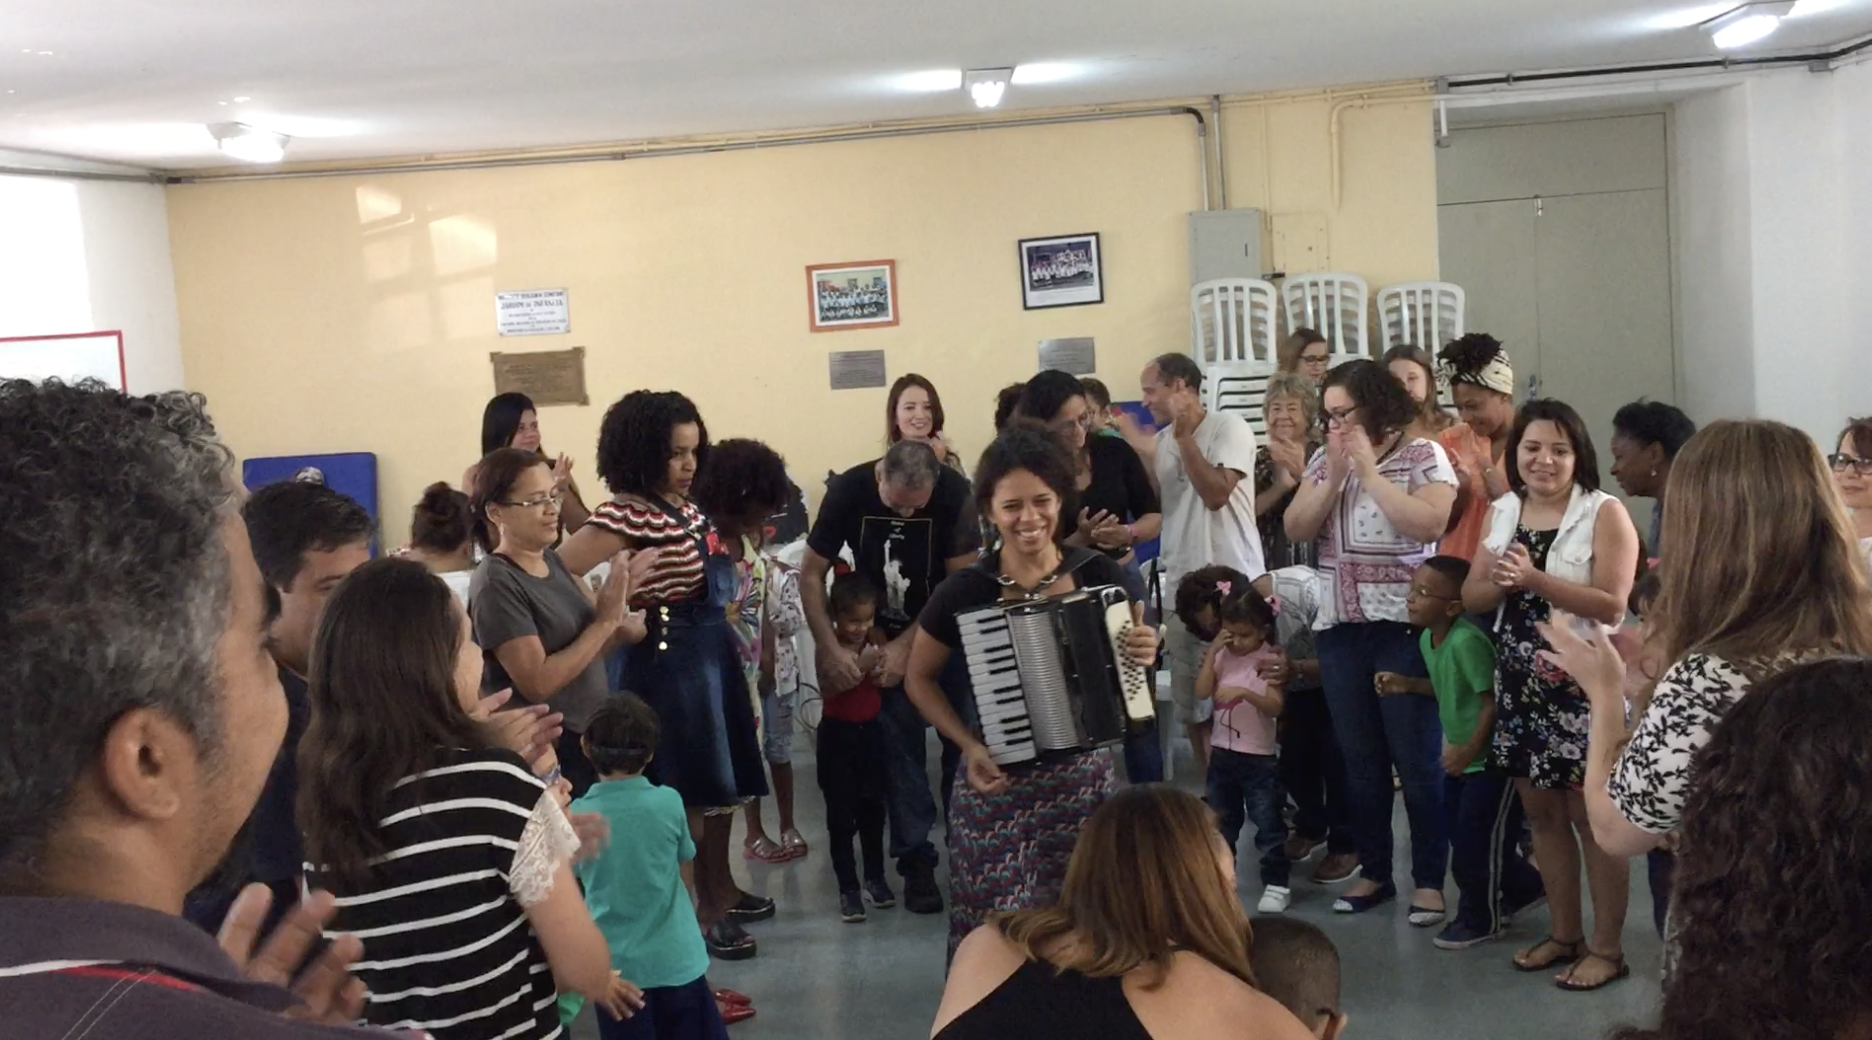 descrição da foto: pais, alunos e professores, cantam e dançam de mãos dadas em roda.  Ao centro, uma mulher toca acordeon.